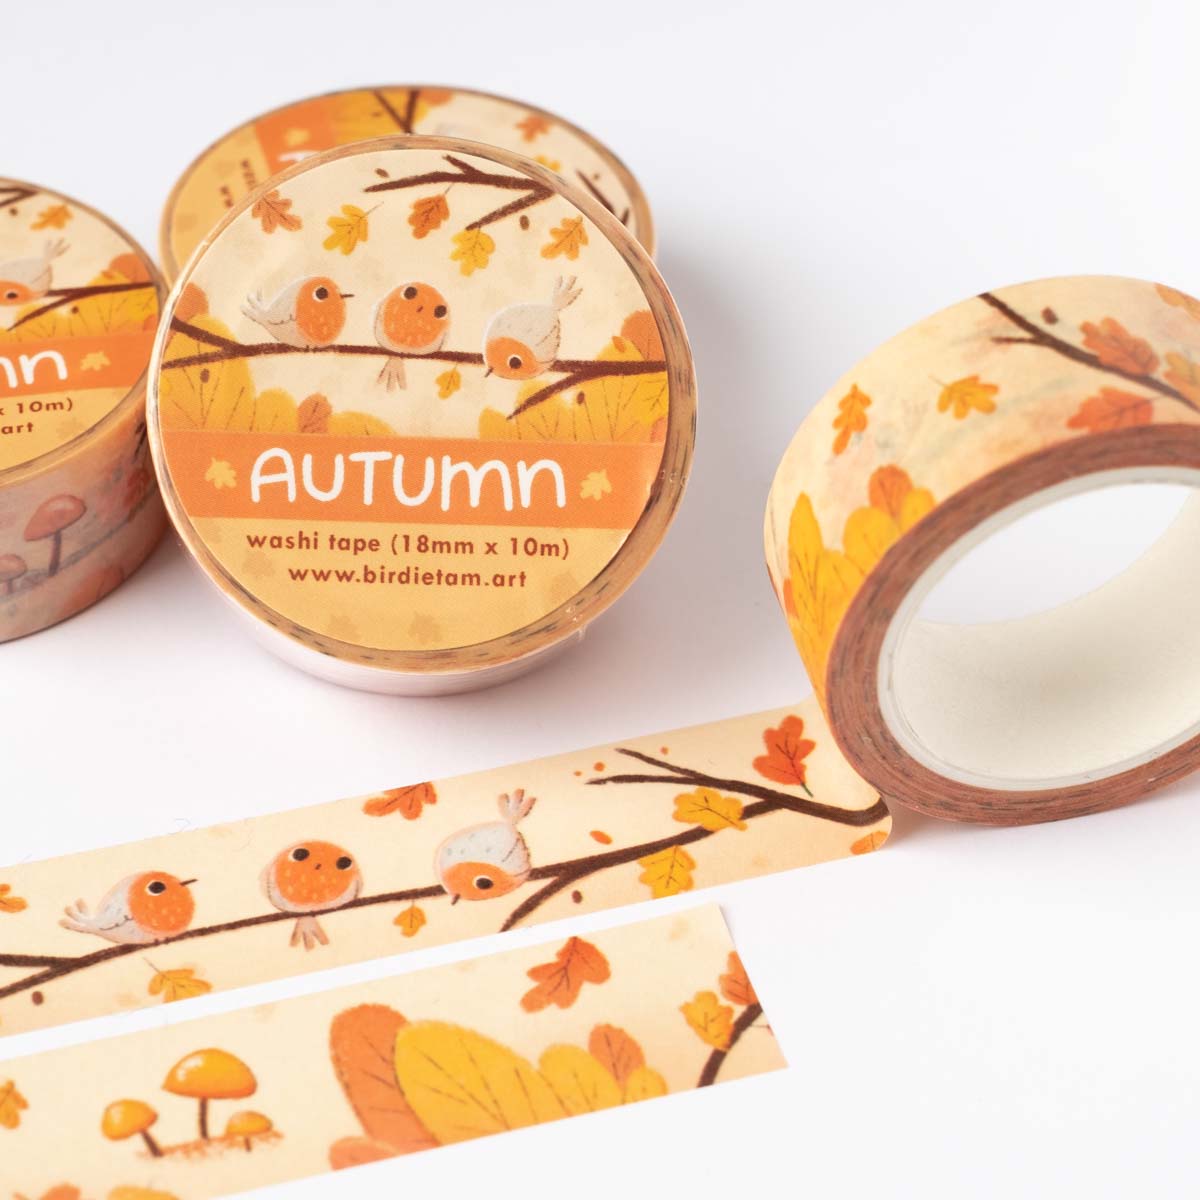 Bundle, washi tape set of 5 - Autumn moments